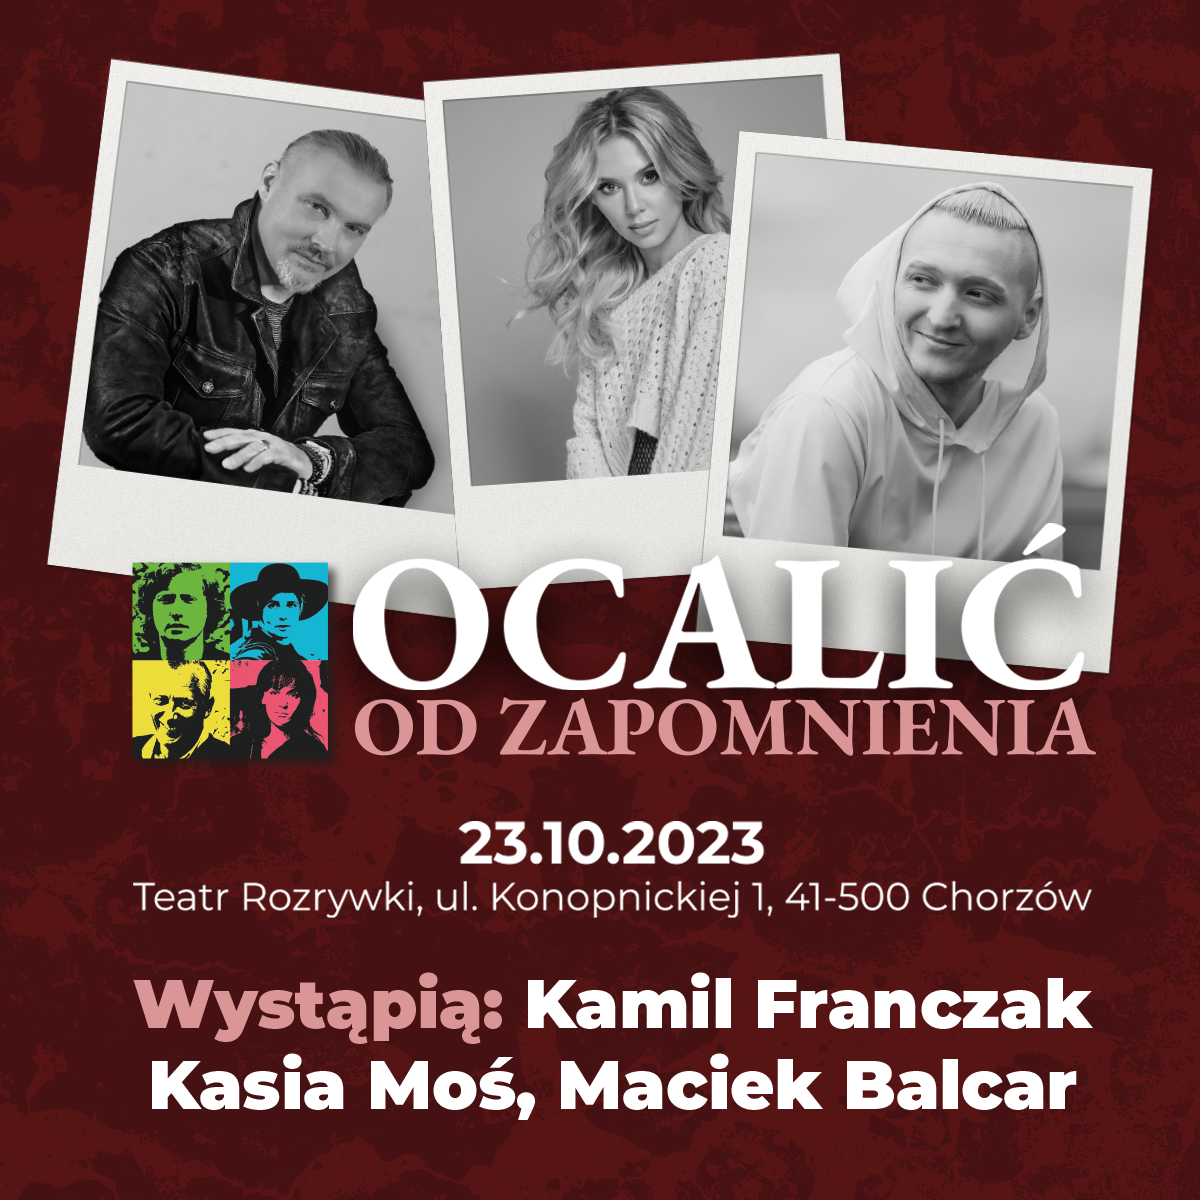 KASIA MOŚ - Jeszcze w zielone gramy | TOP OF THE TOP Sopot Festival 2023